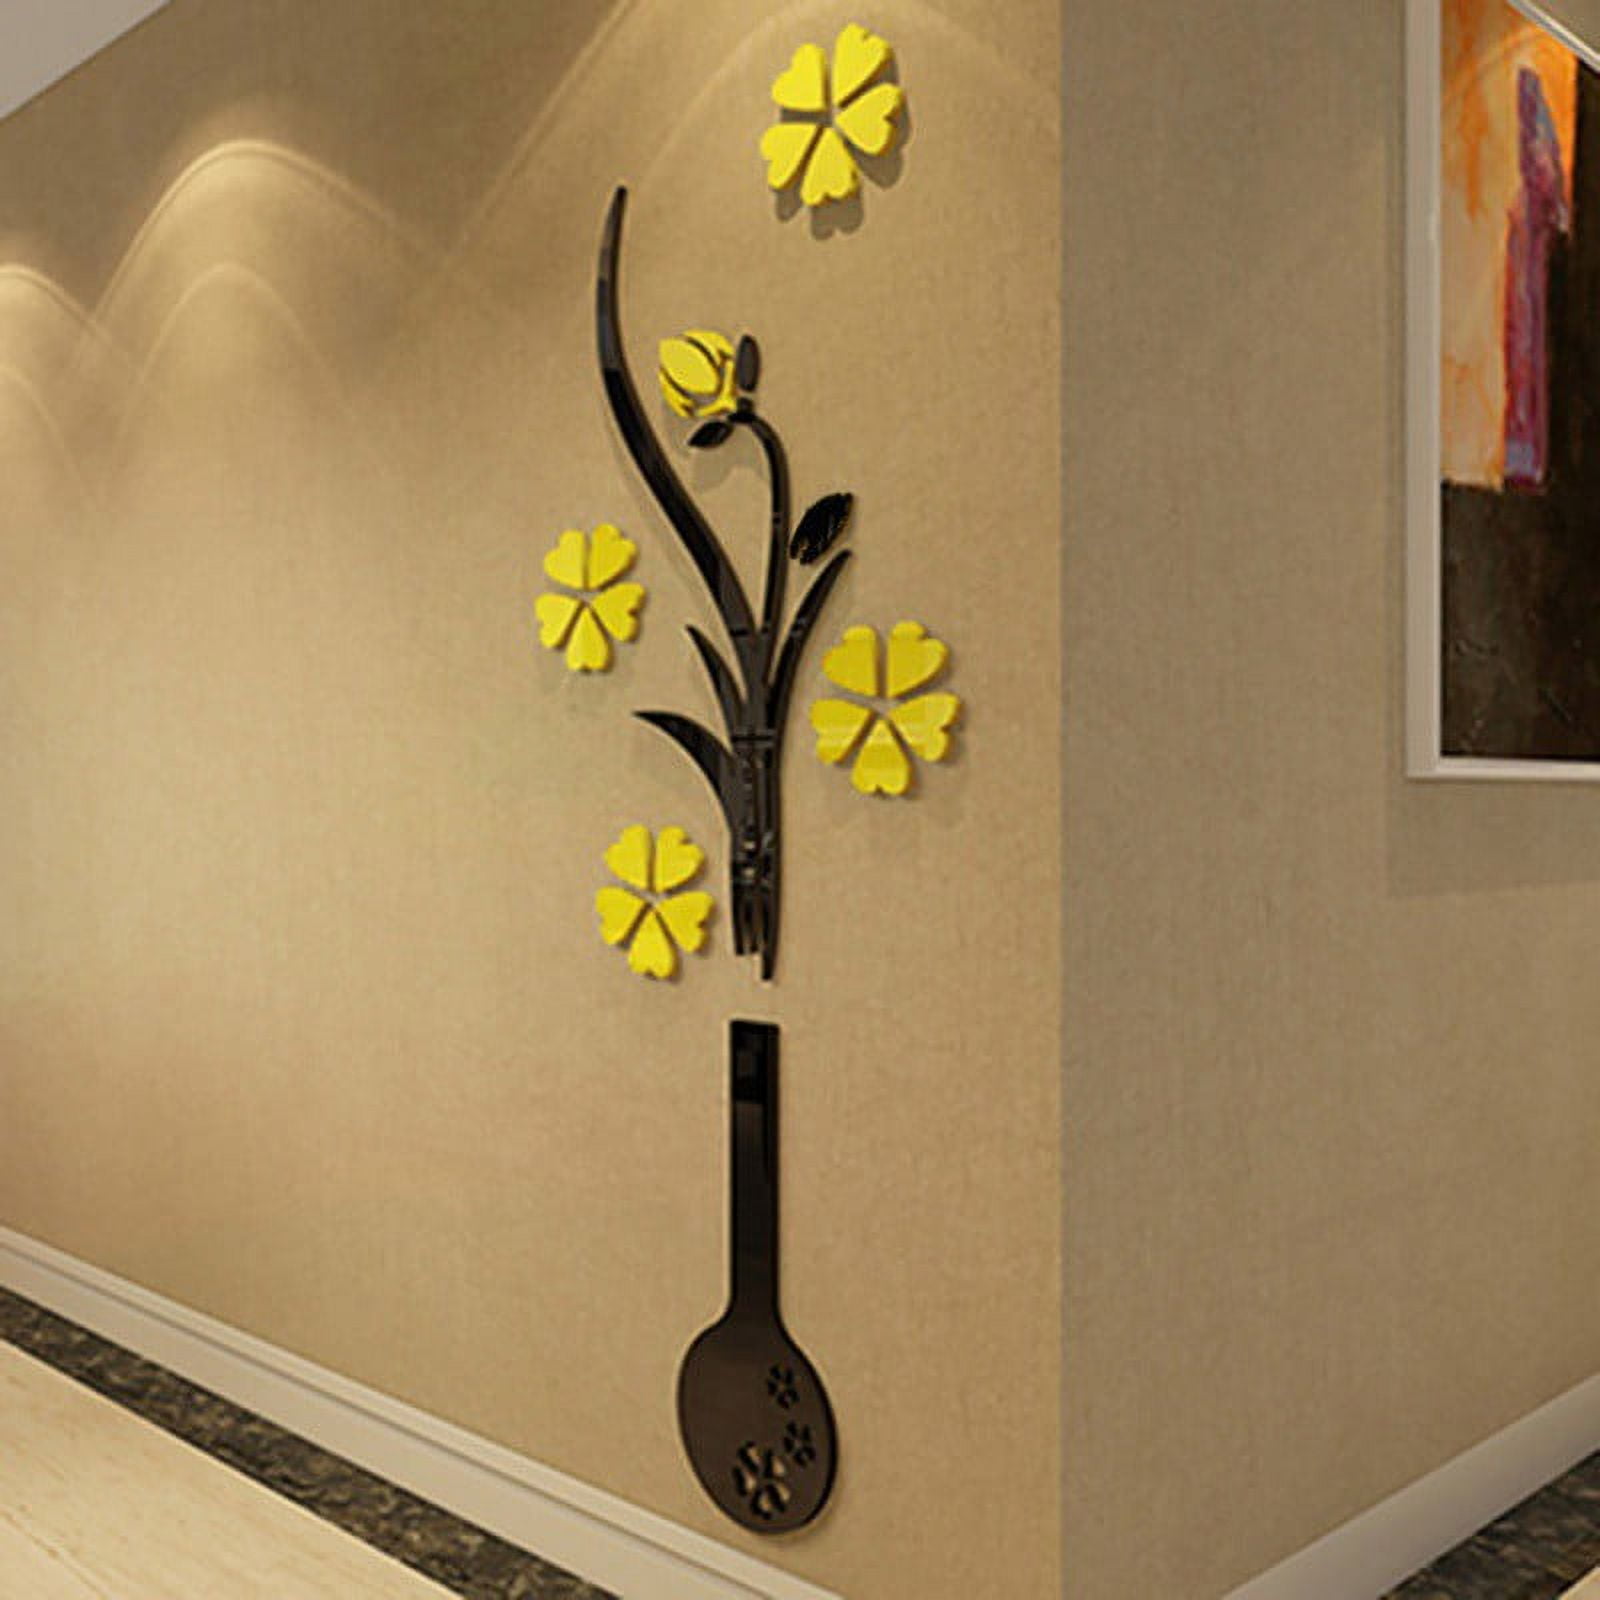 Vinyl Tree of Life 3D Flower Wall Sticker Art Mural Vase Removable